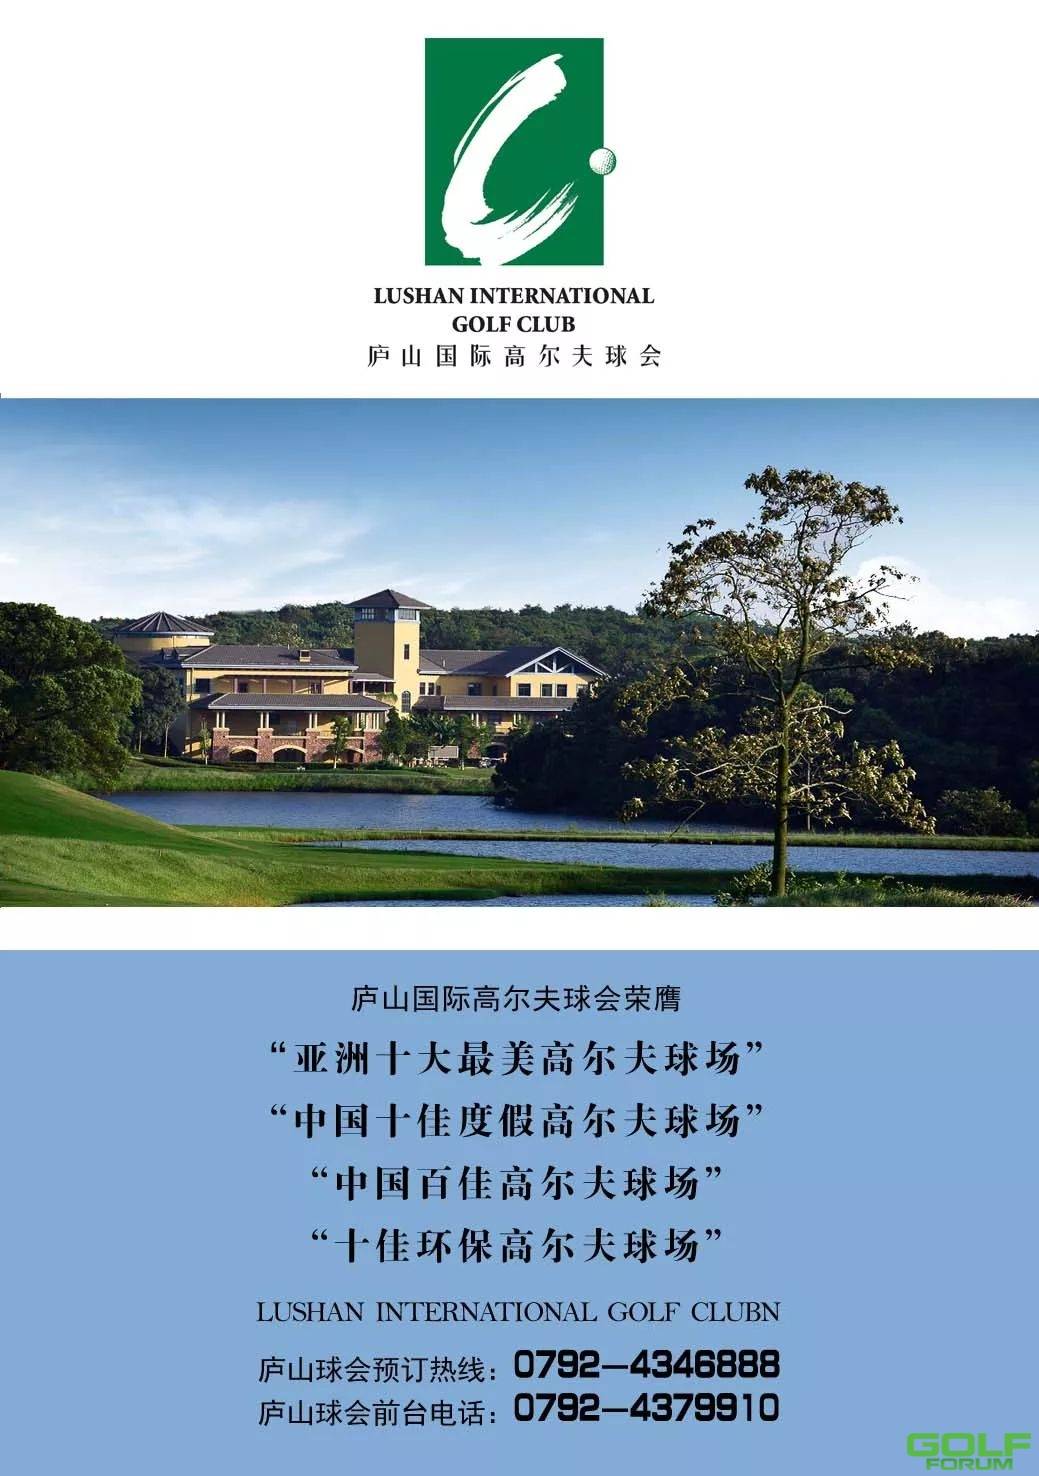 2021年首届智远·红旗谷高尔夫队际邀请赛，江西庐山会员代表队荣获：“团体 ...